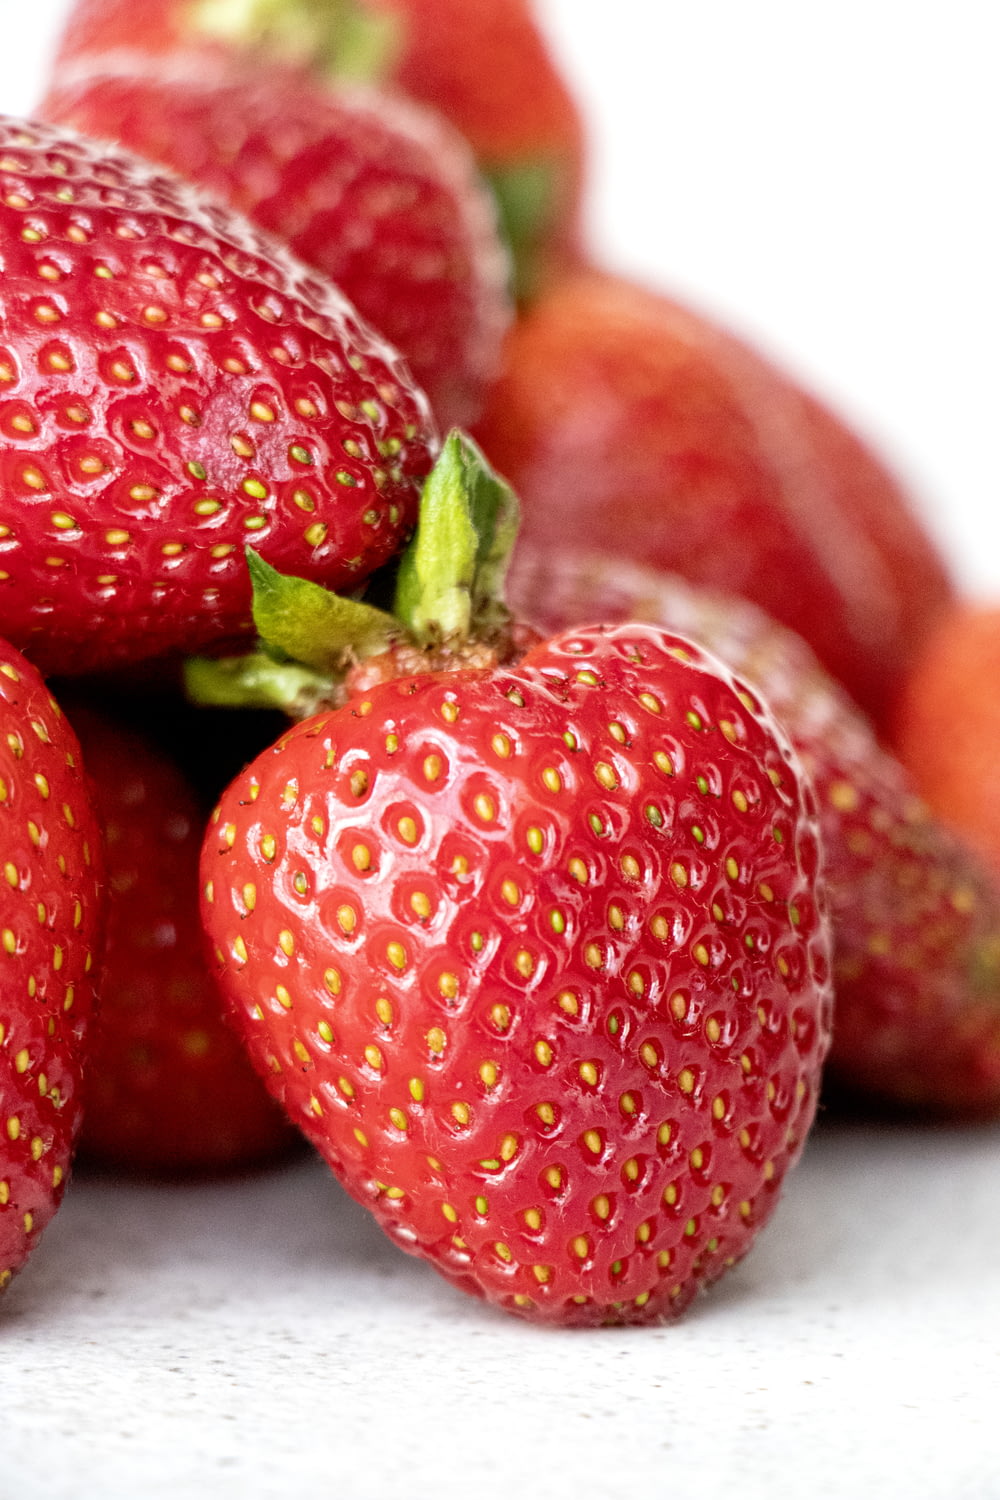 Rote Erdbeeren in Nahaufnahmen